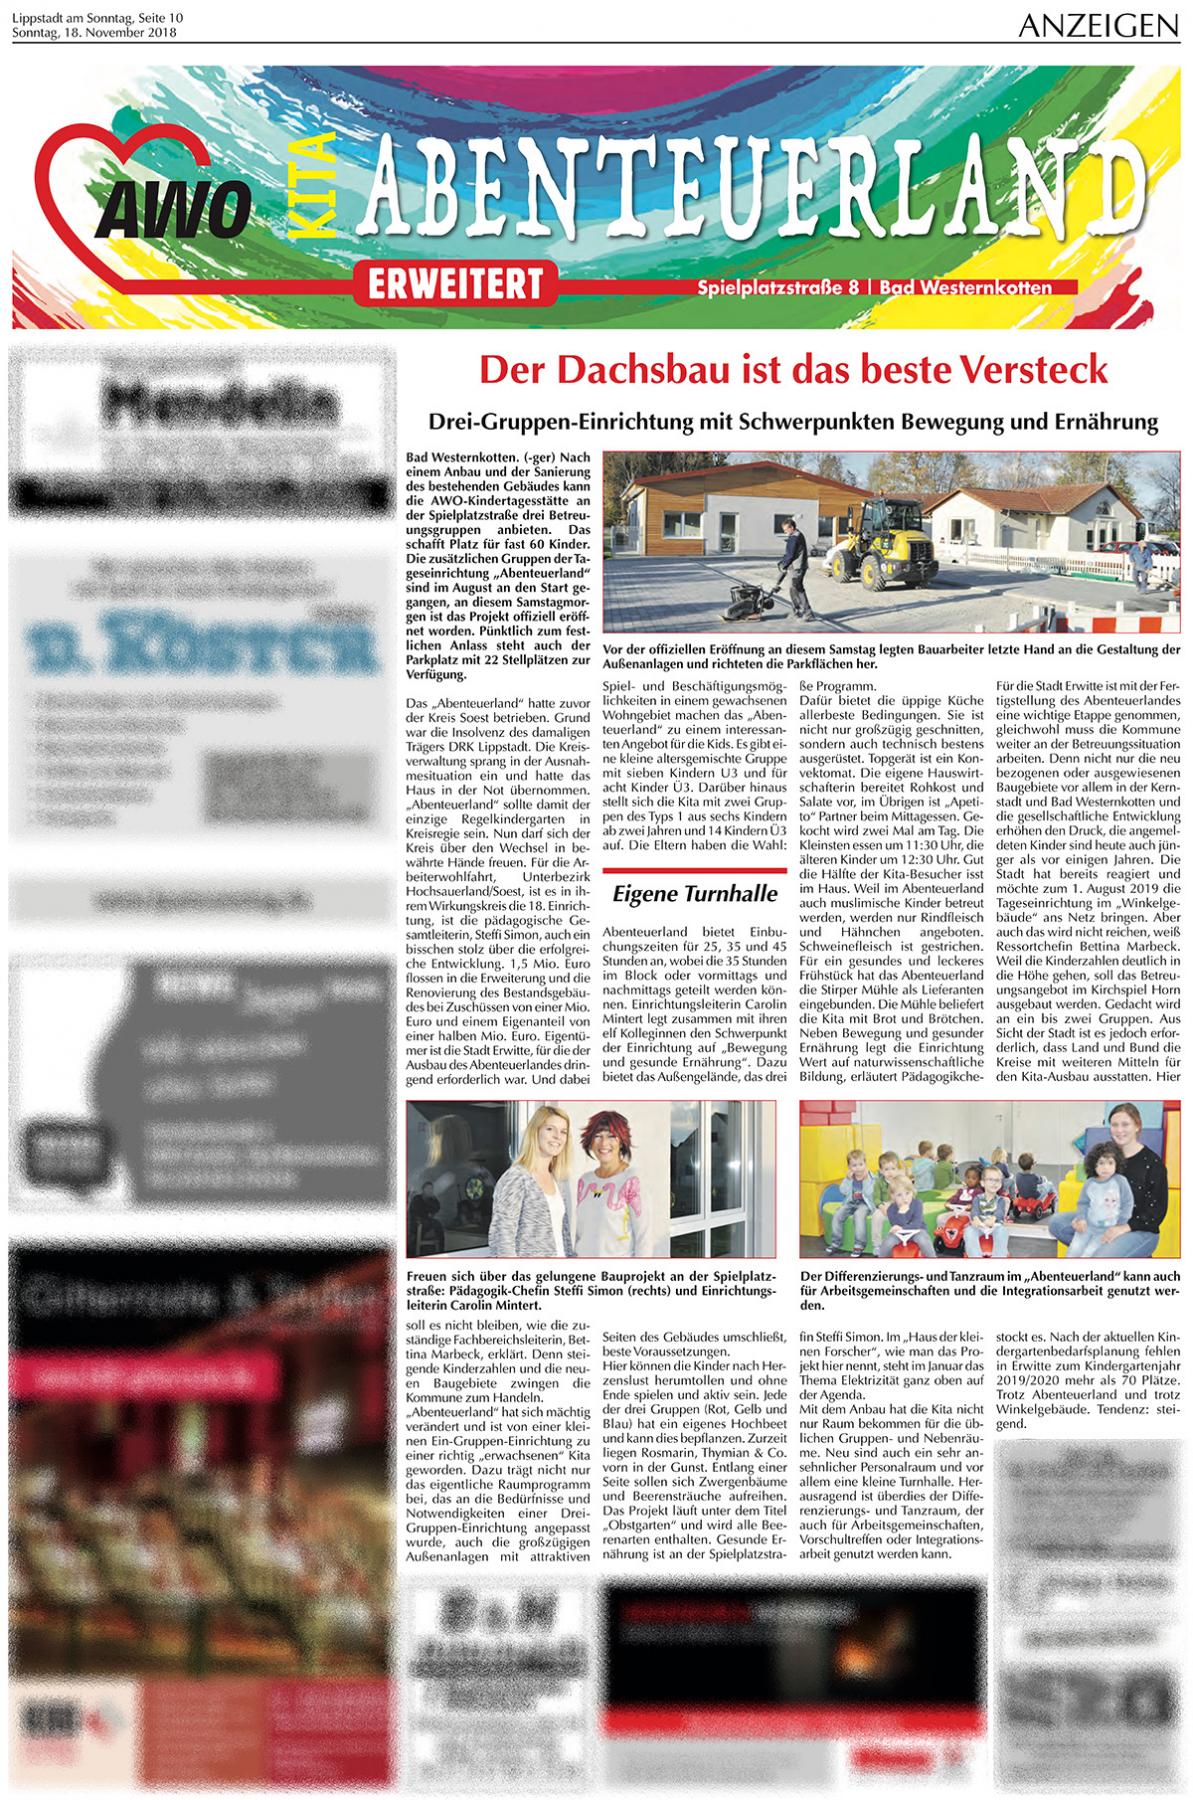 Lippstadt am Sonntag, Seite 10, 18.11.2018